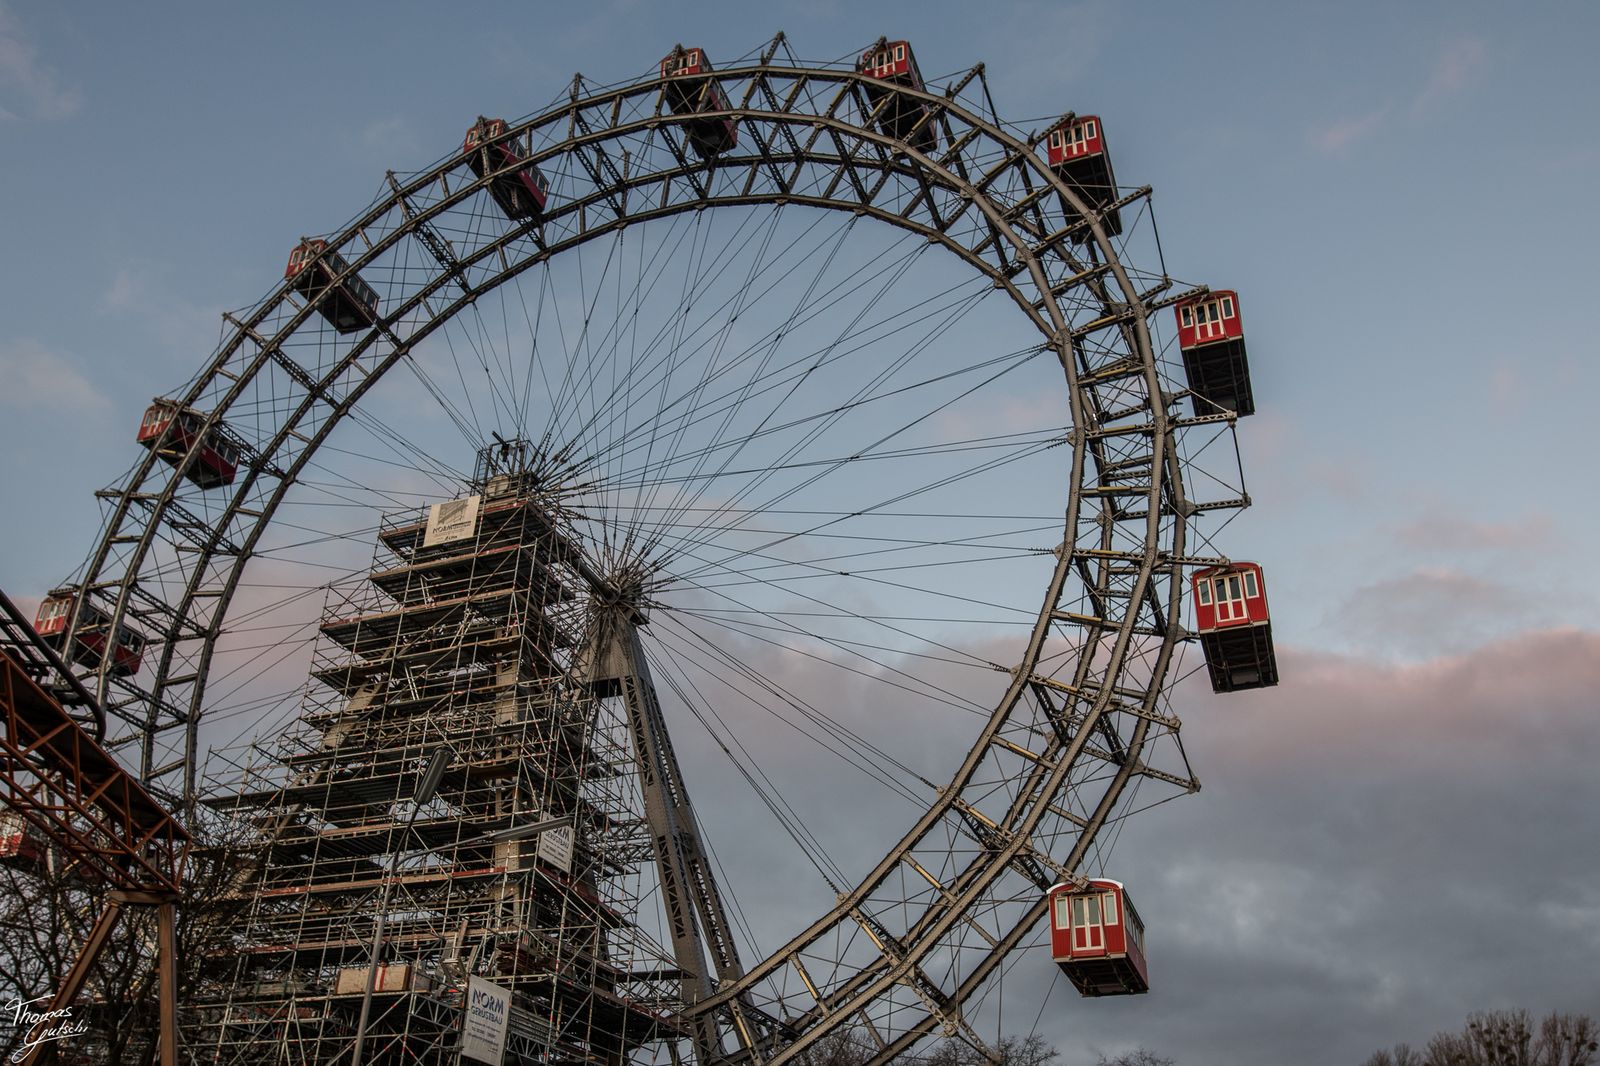 © Thomas Gutschi - Viennas Giant Ferris Wheel